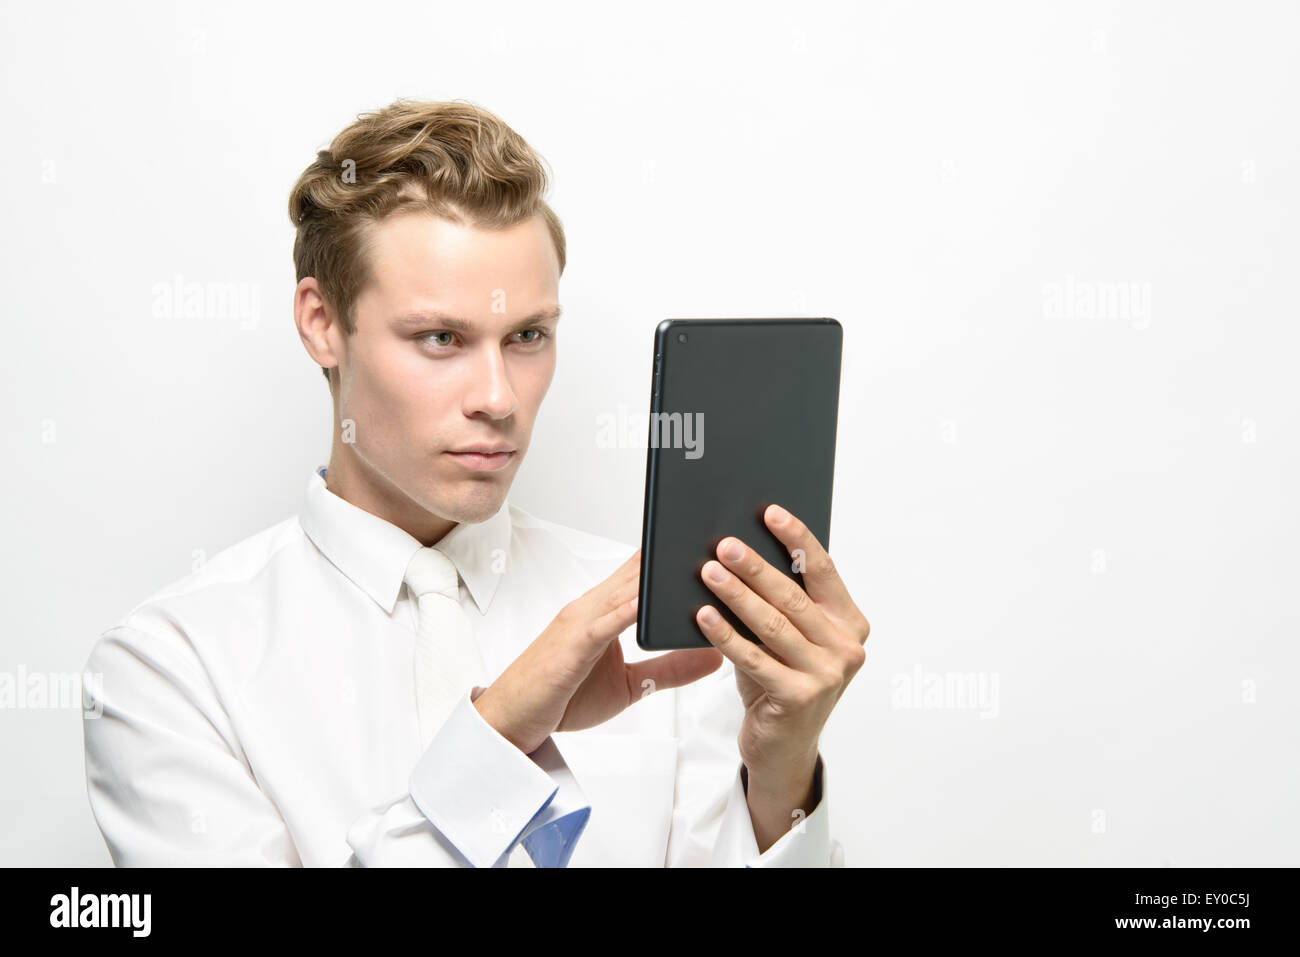 Un bel giovane uomo utilizzando un ipad/tablet. Indossa un abito bianco, pulire un concept futuristico. Foto Stock